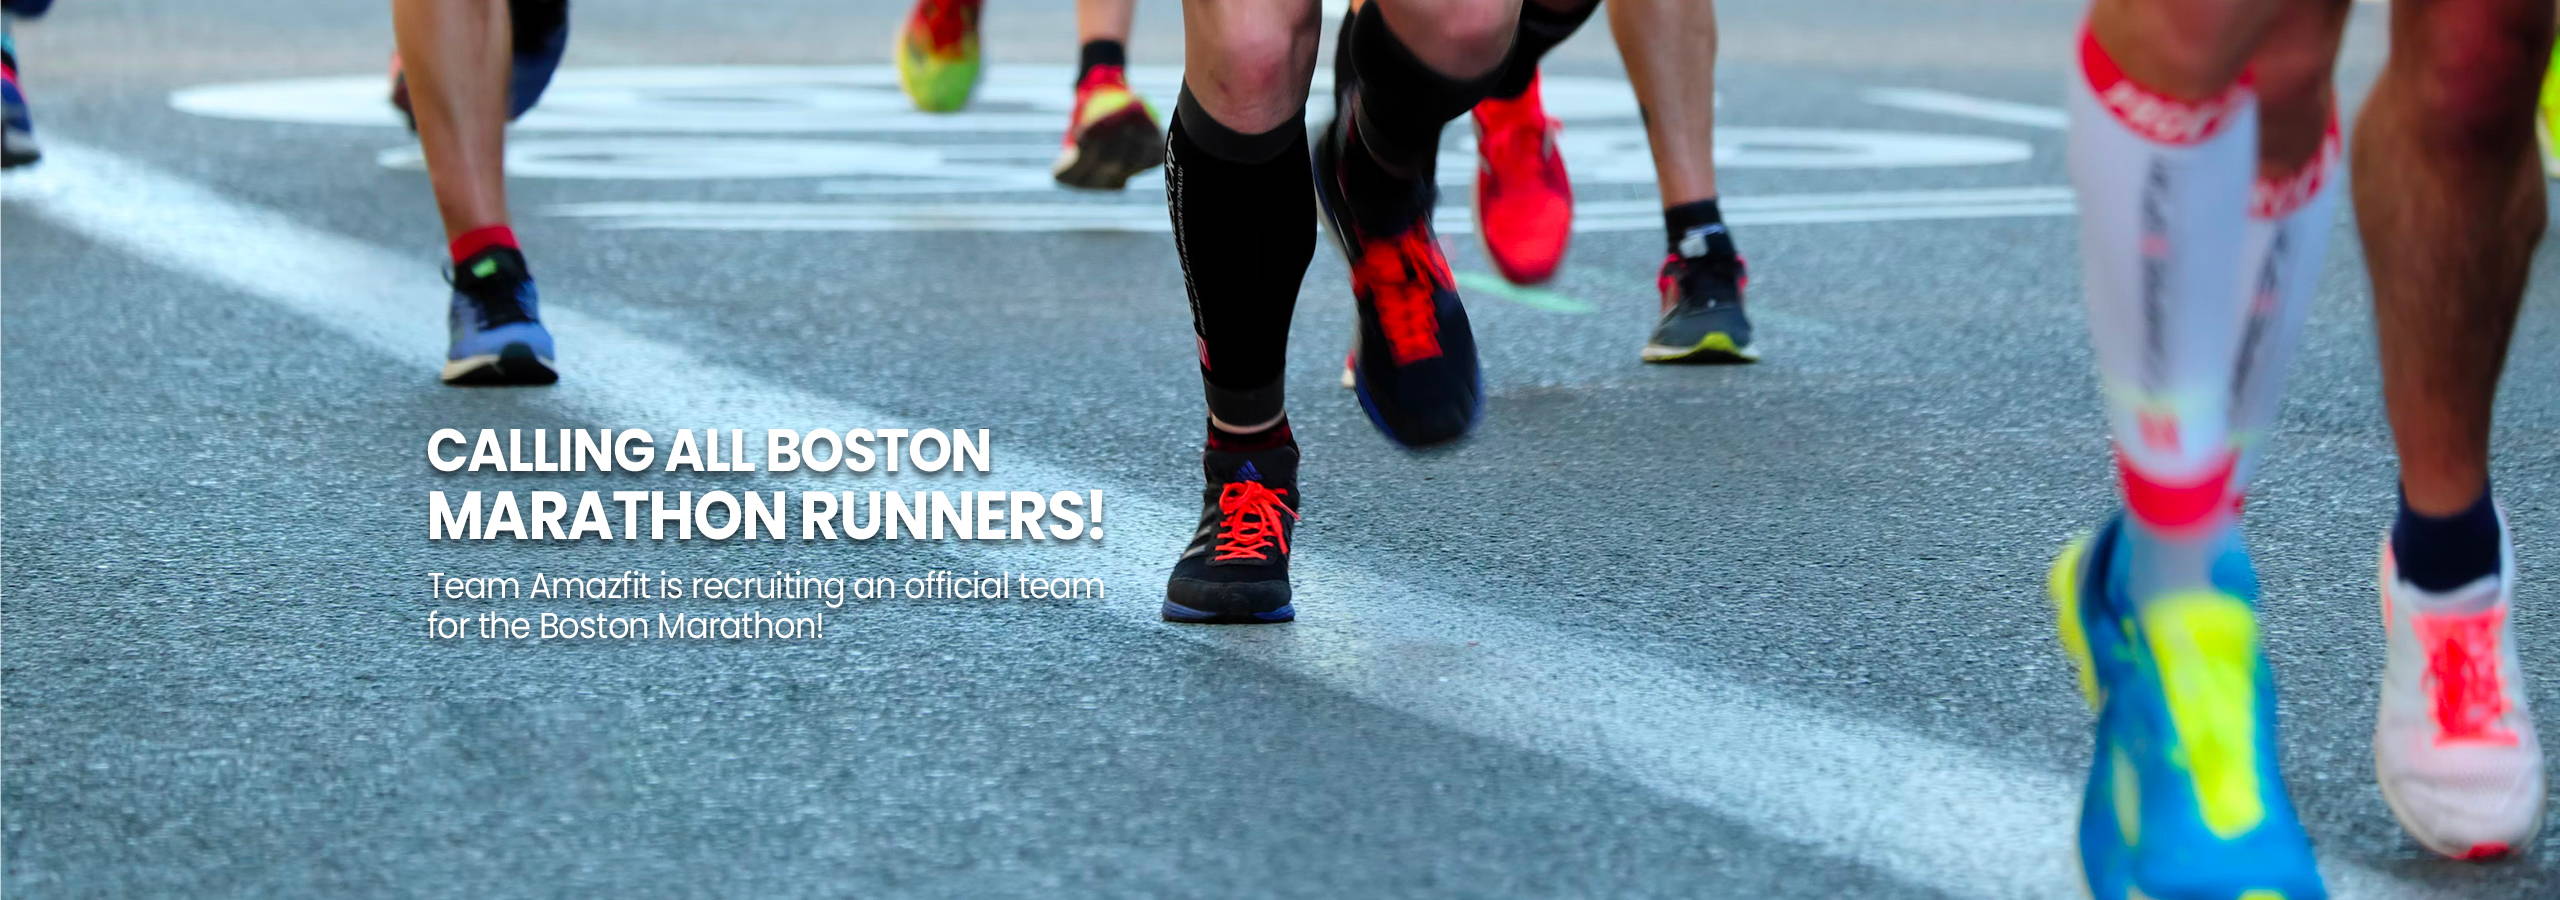 Boston Marathon Recritment – Amazfit